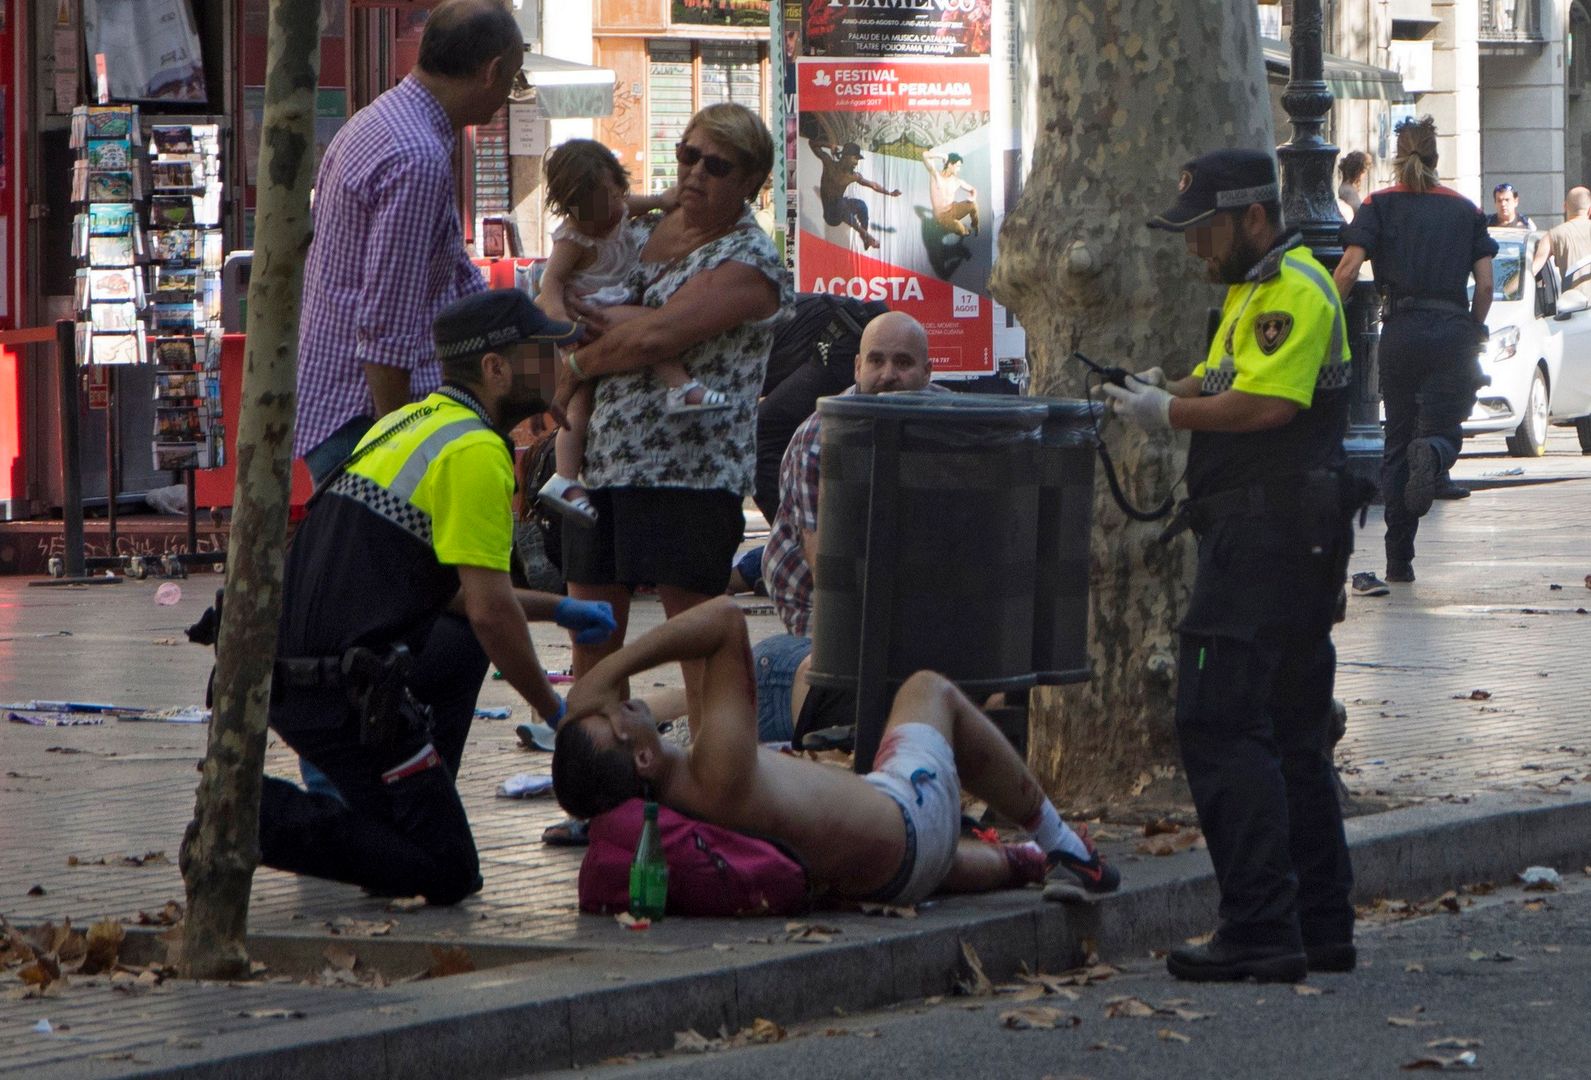 Krwawy zamach w Barcelonie. Van wjechał w tłum. ISIS: To nasz atak